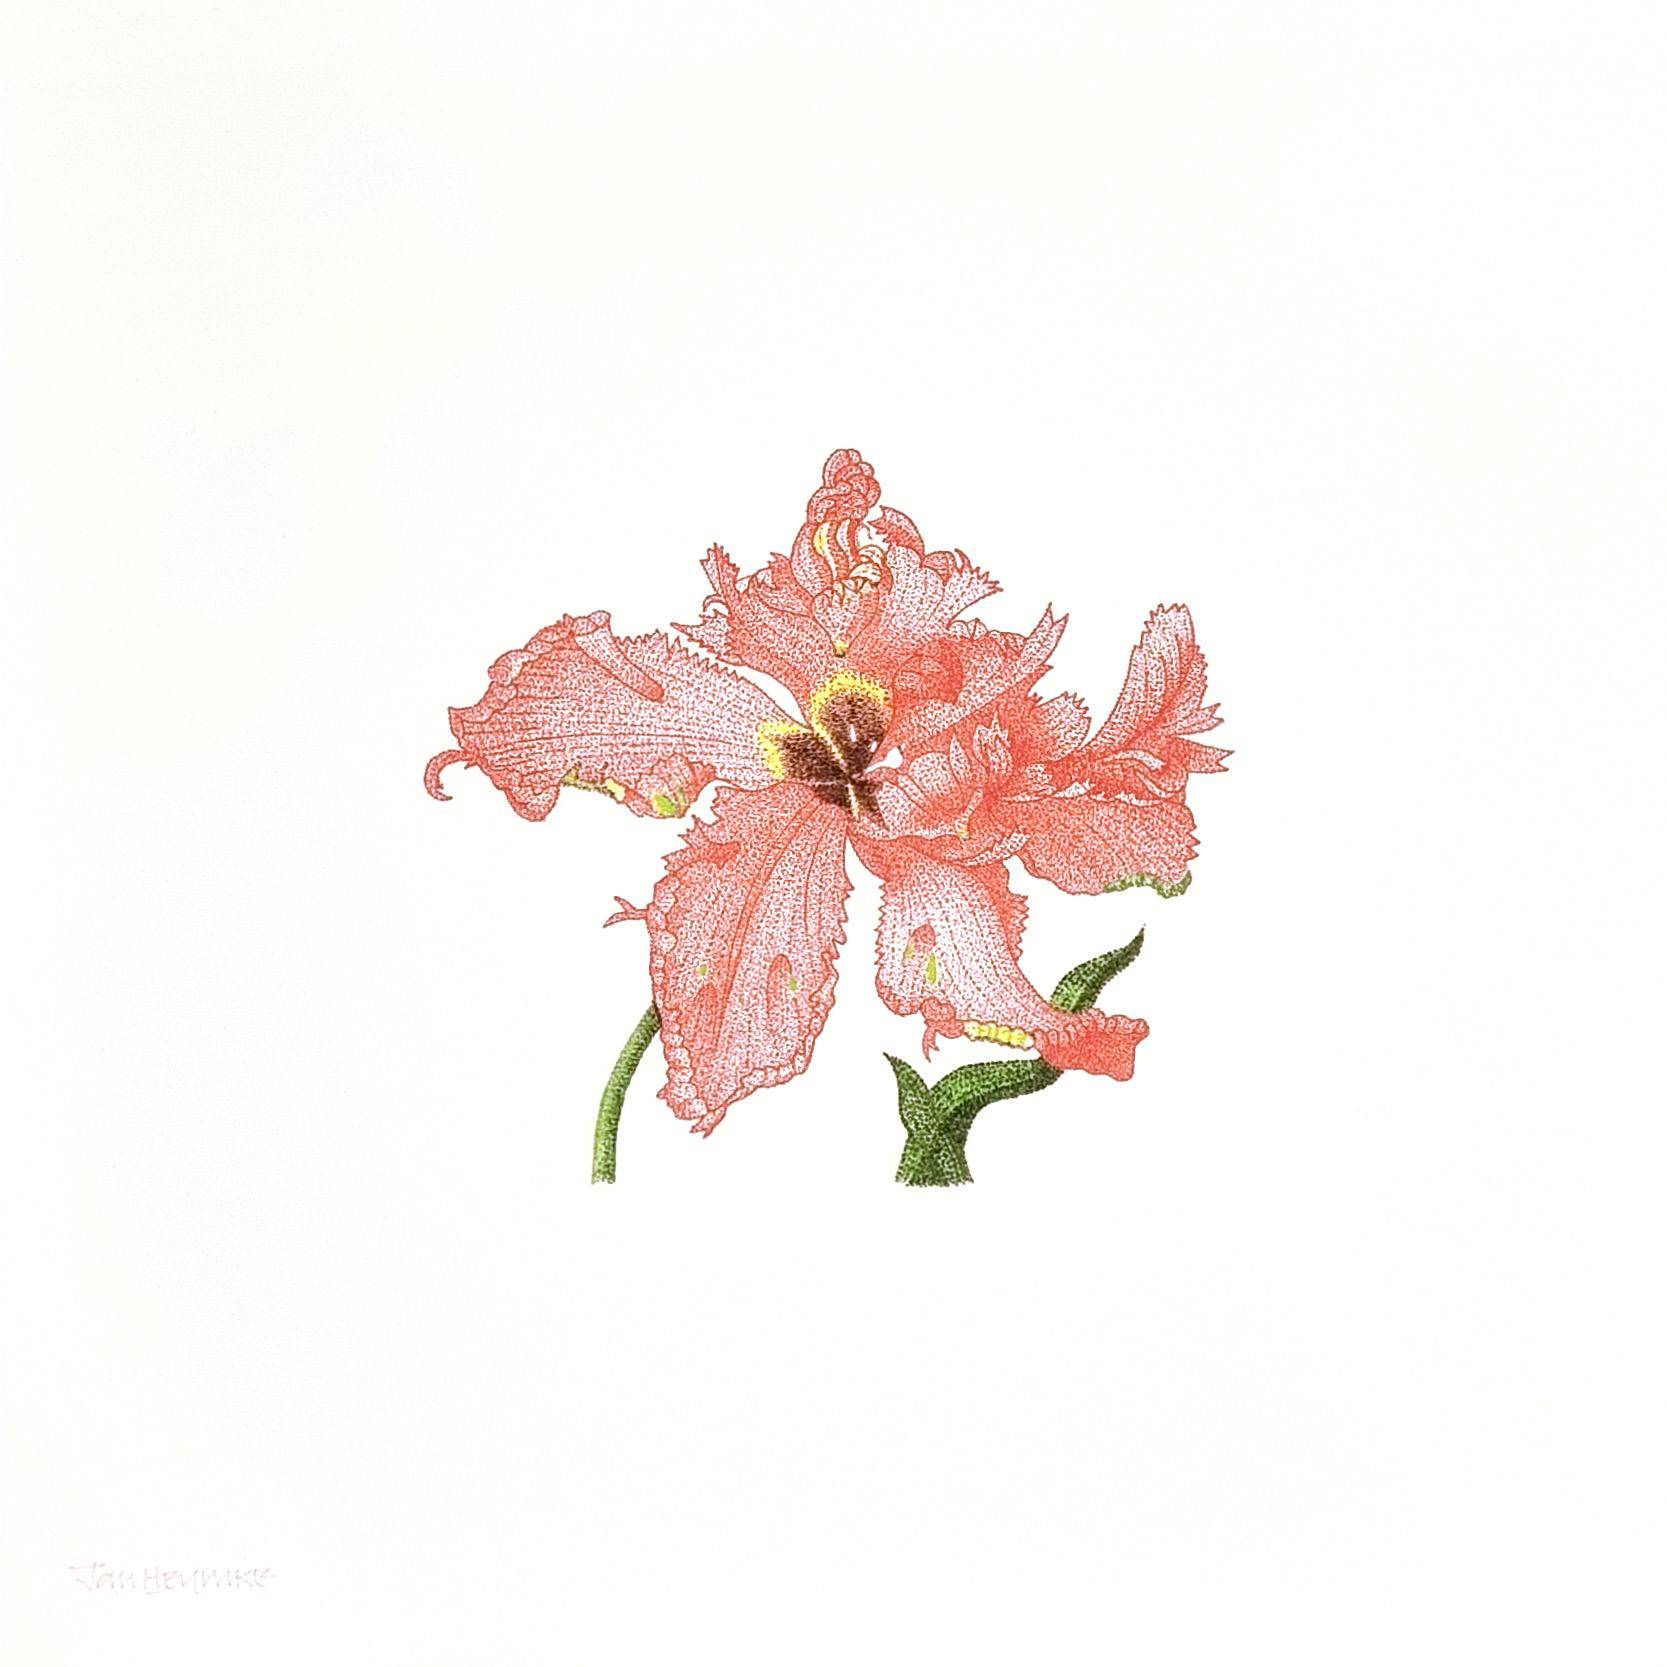 Tulpe, Tulipa Gesneriana, Papagei – Print von Jan Heynike